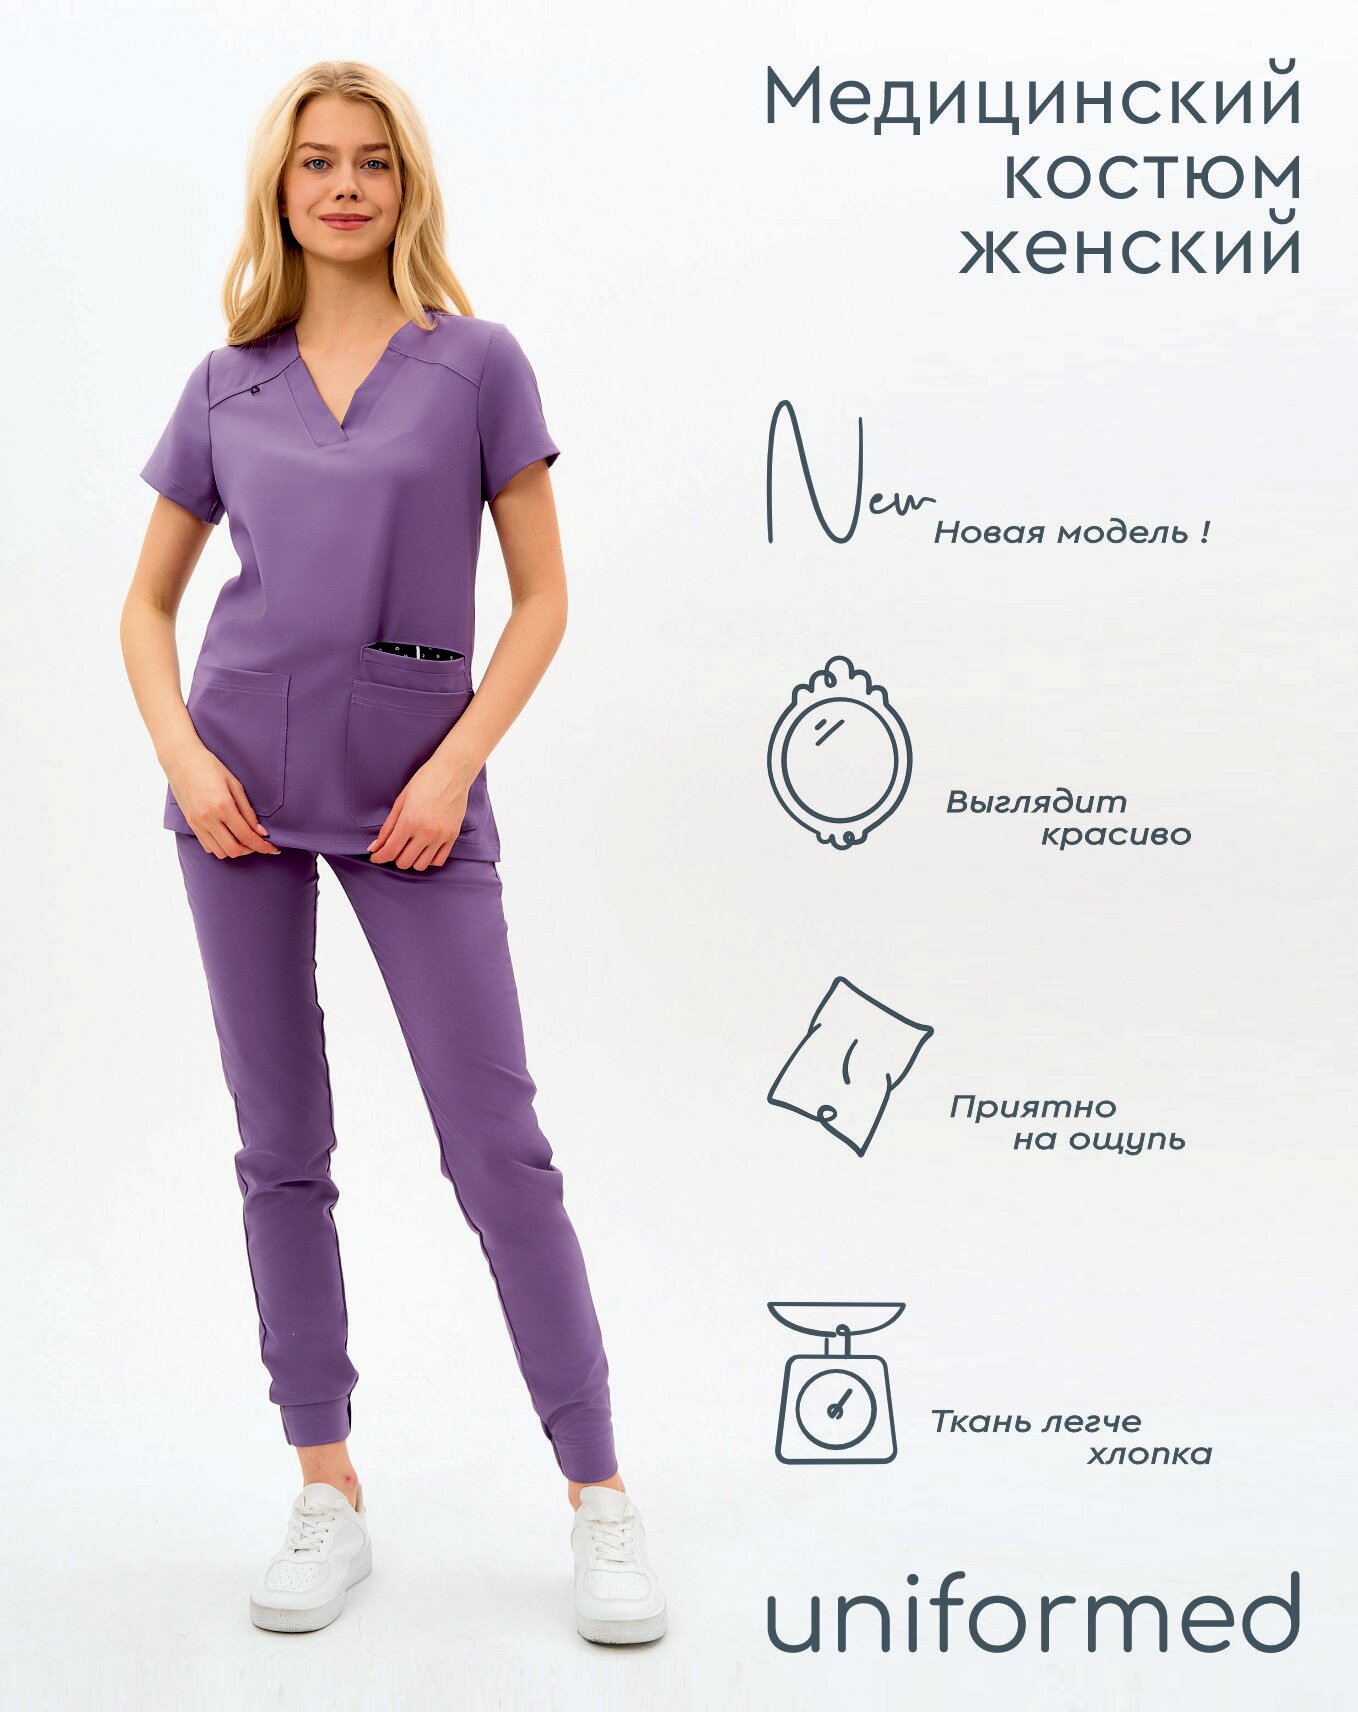 Медицинский женский костюм 419.5.3 Uniformed, ткань вискоза стрейч, рукав короткий, цвет сиреневый, отделка черная, размер 46